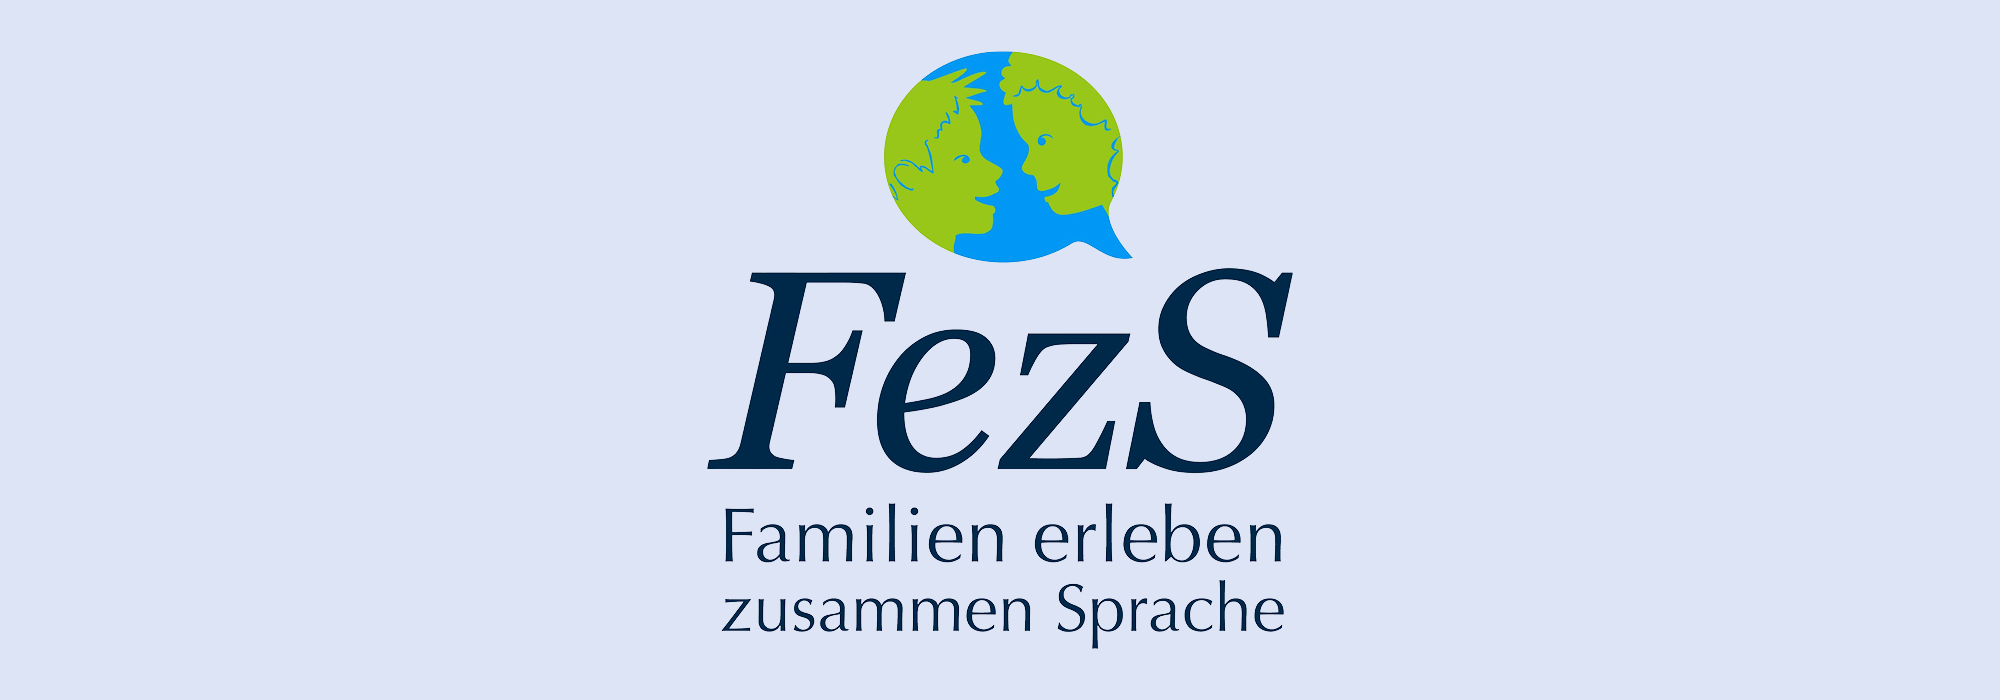 FezS – Familien erleben zusammen Sprache